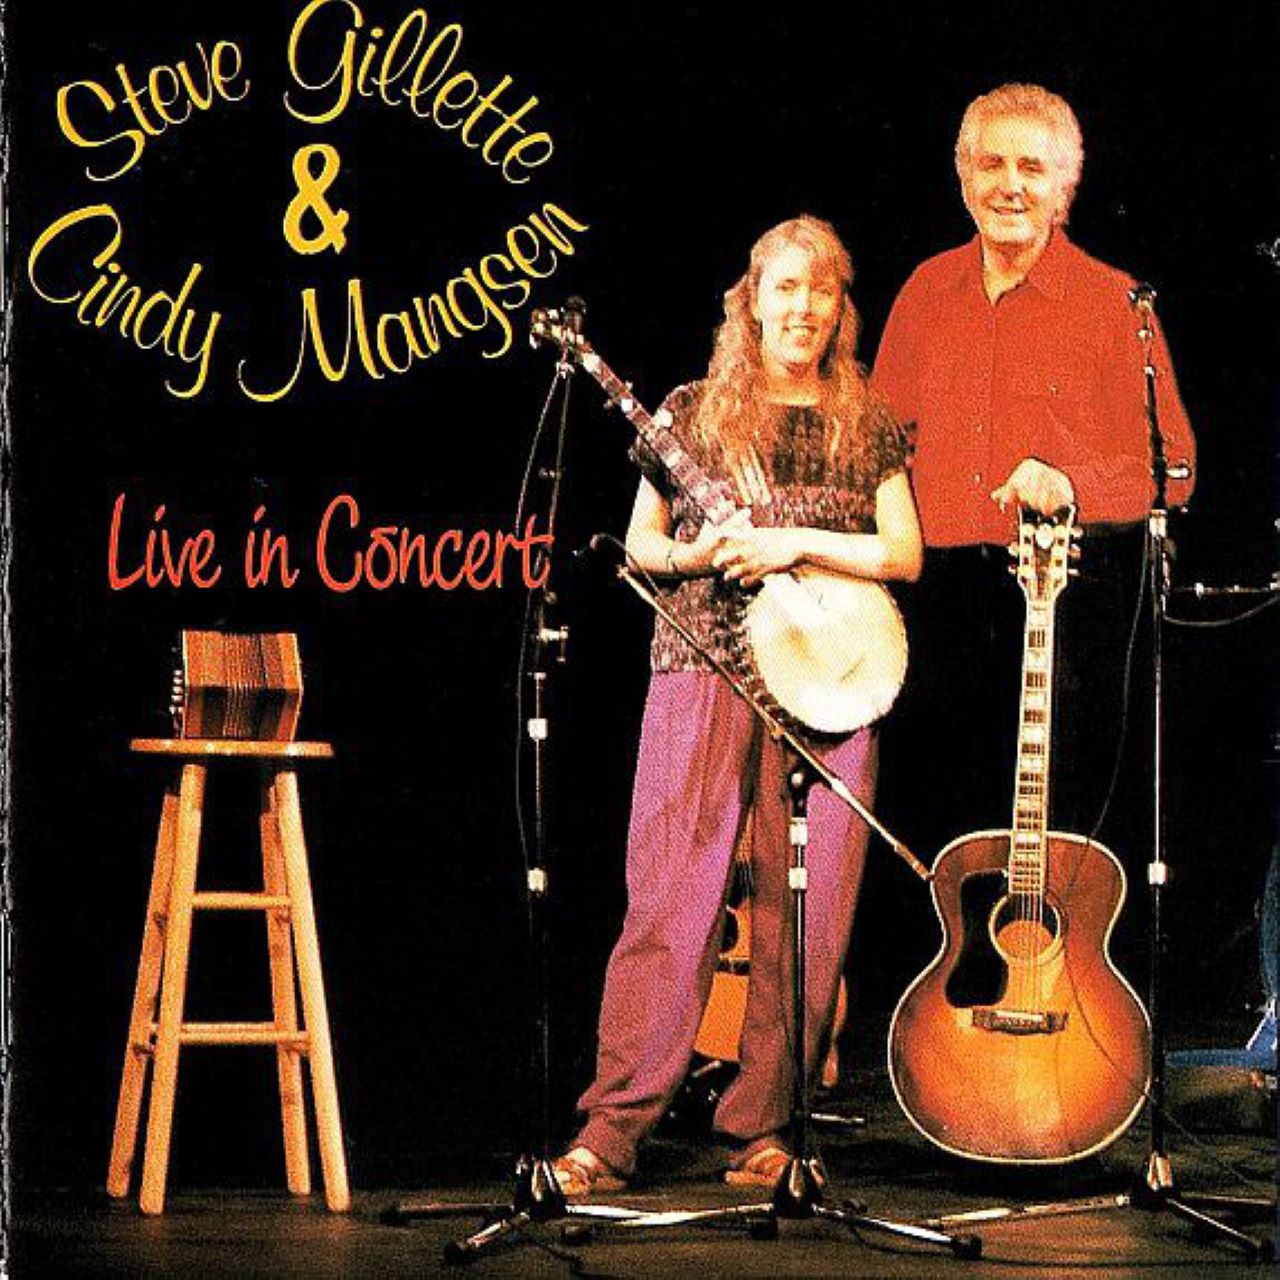 Steve Gillette & Cindy Mangsen - Live in Concert cover album